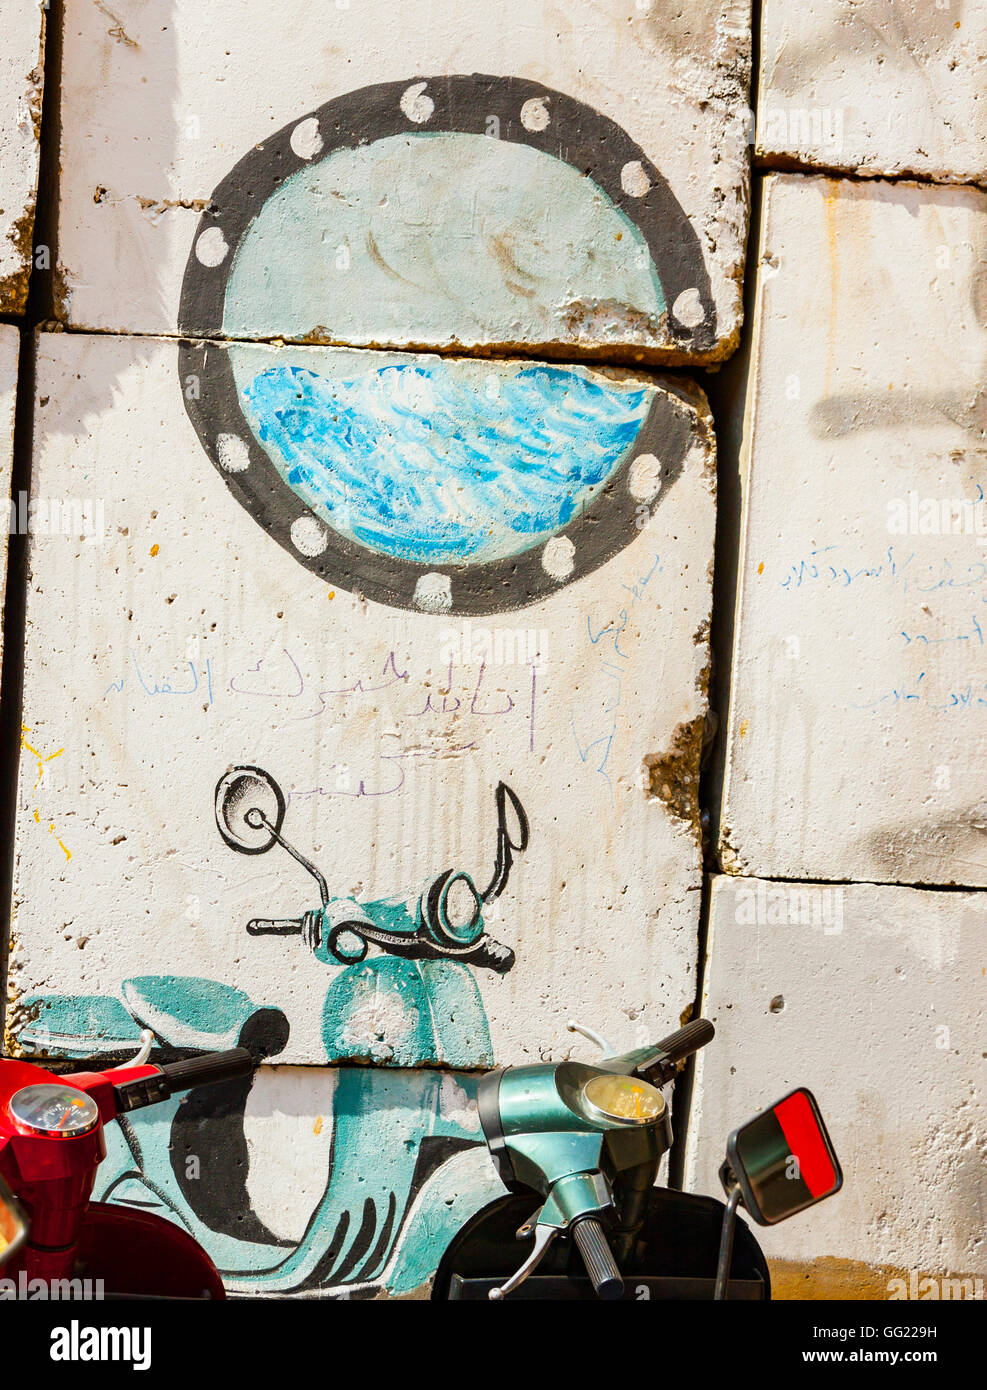 Egypte, Caire, Street Art.Il y a un scooter bleu en face du mur, de la confusion avec un autre peint sur le mur. Banque D'Images